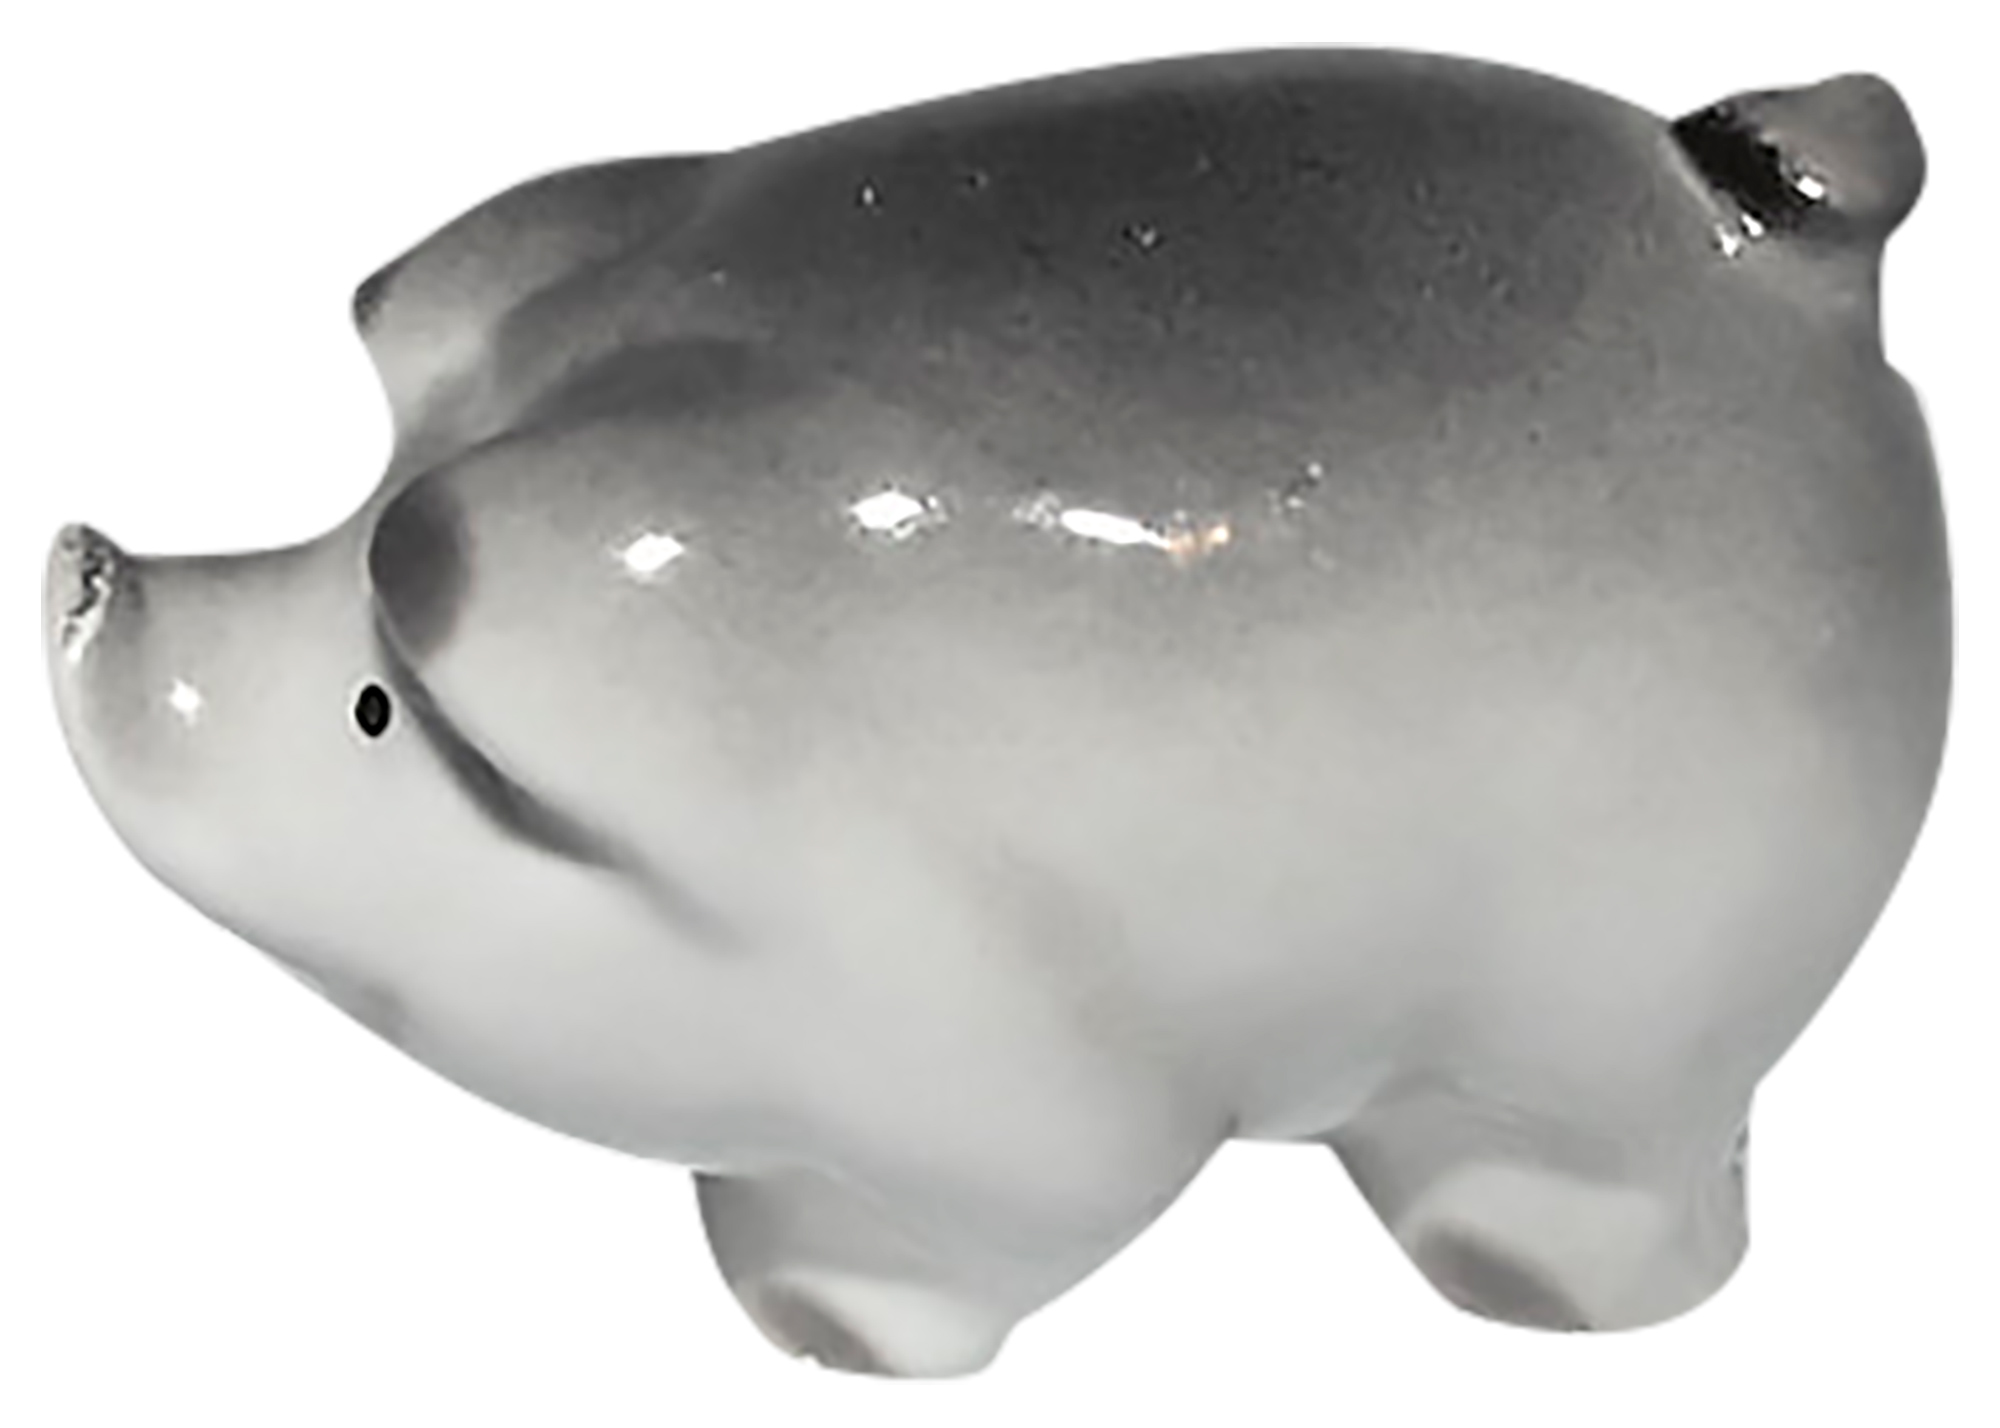 Buy Dark Gray Piglet Figurine at GoldenCockerel.com